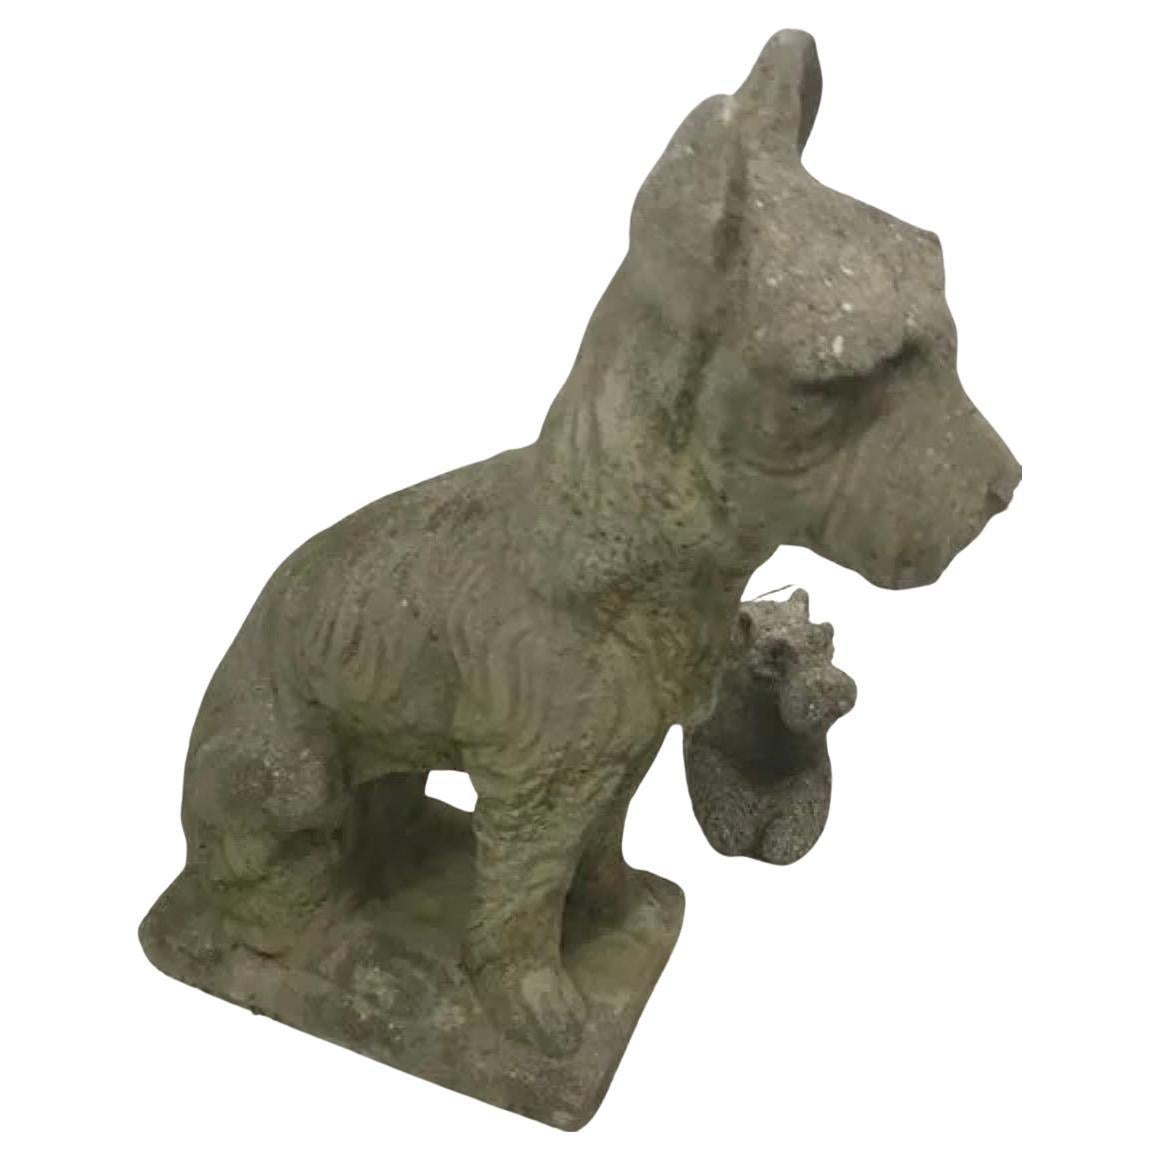 2 Cast Concrete Scottie Dog Sculptures 1